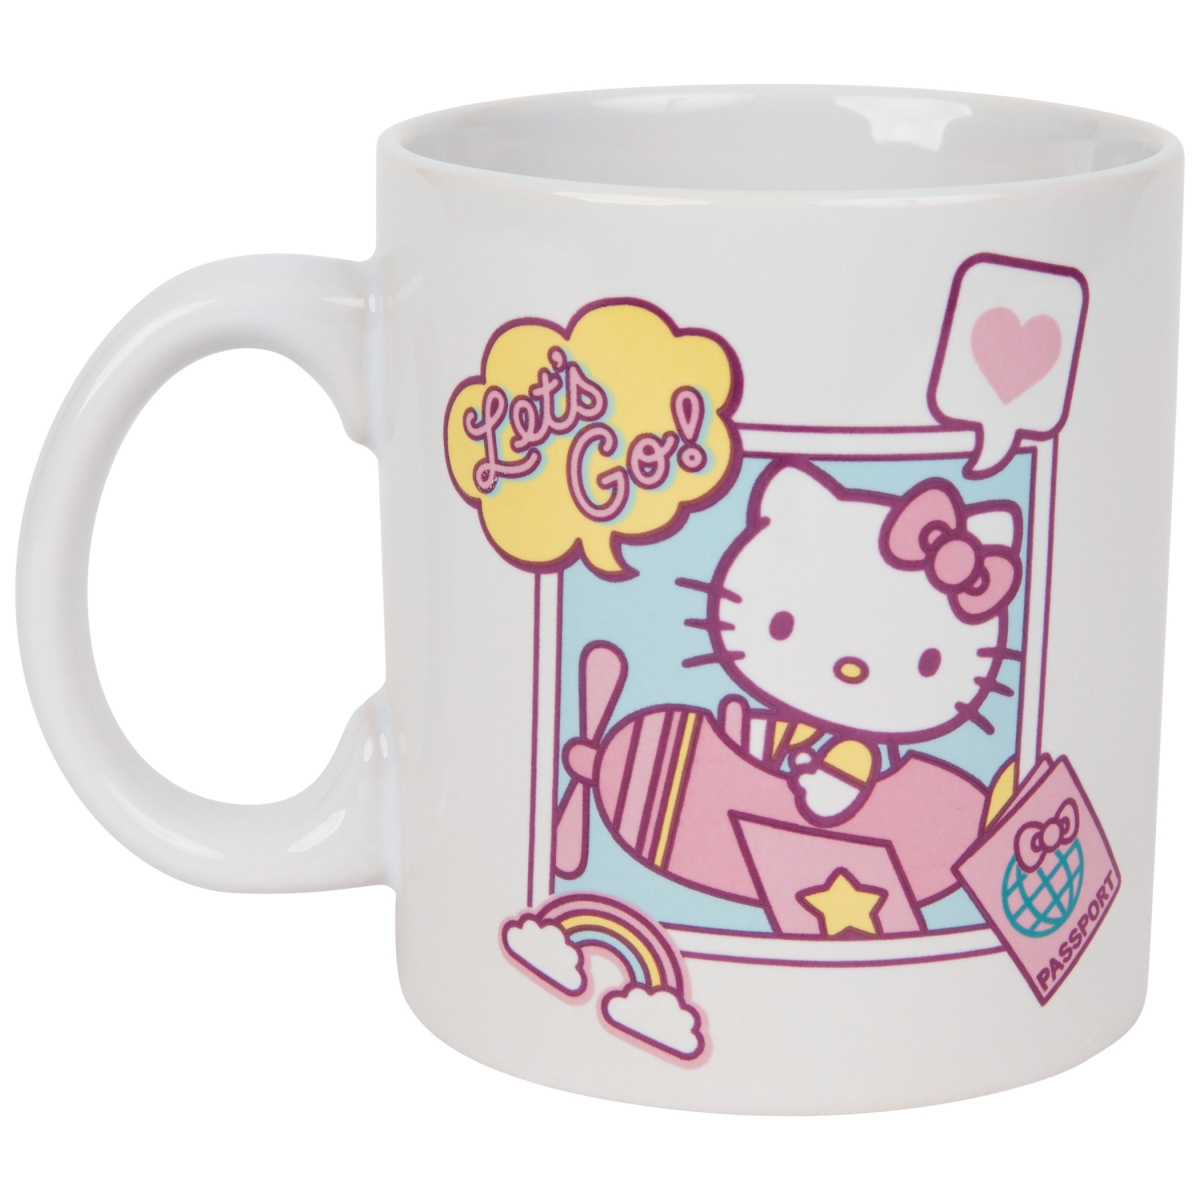 Hello Kitty 863526 20 oz Hello Kitty Lets Go Jumbo Ceramic Mug